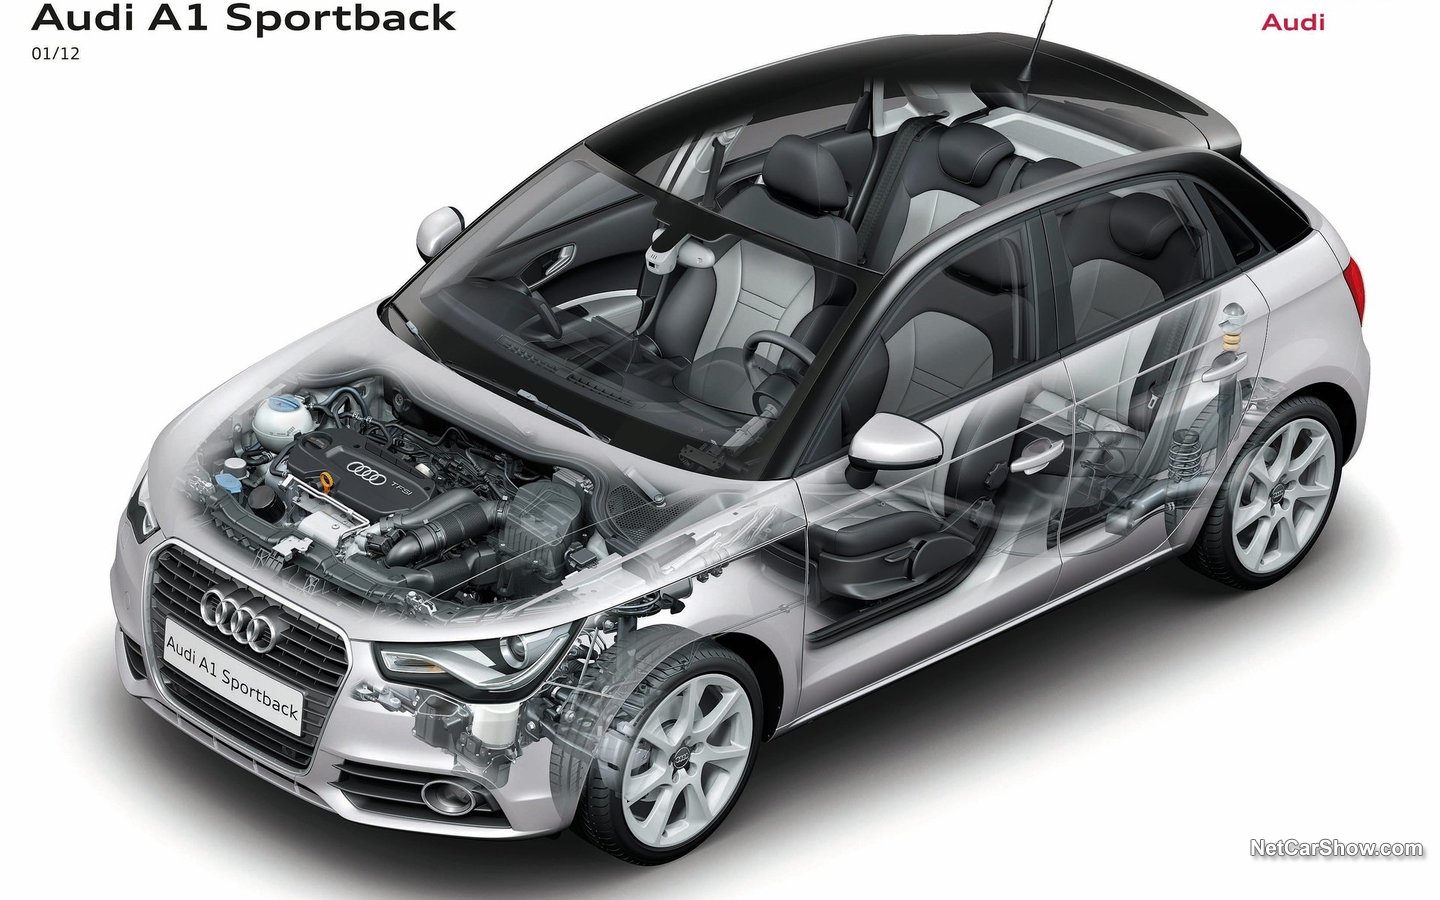 Audi A1 Sportback 2012 41d409ce